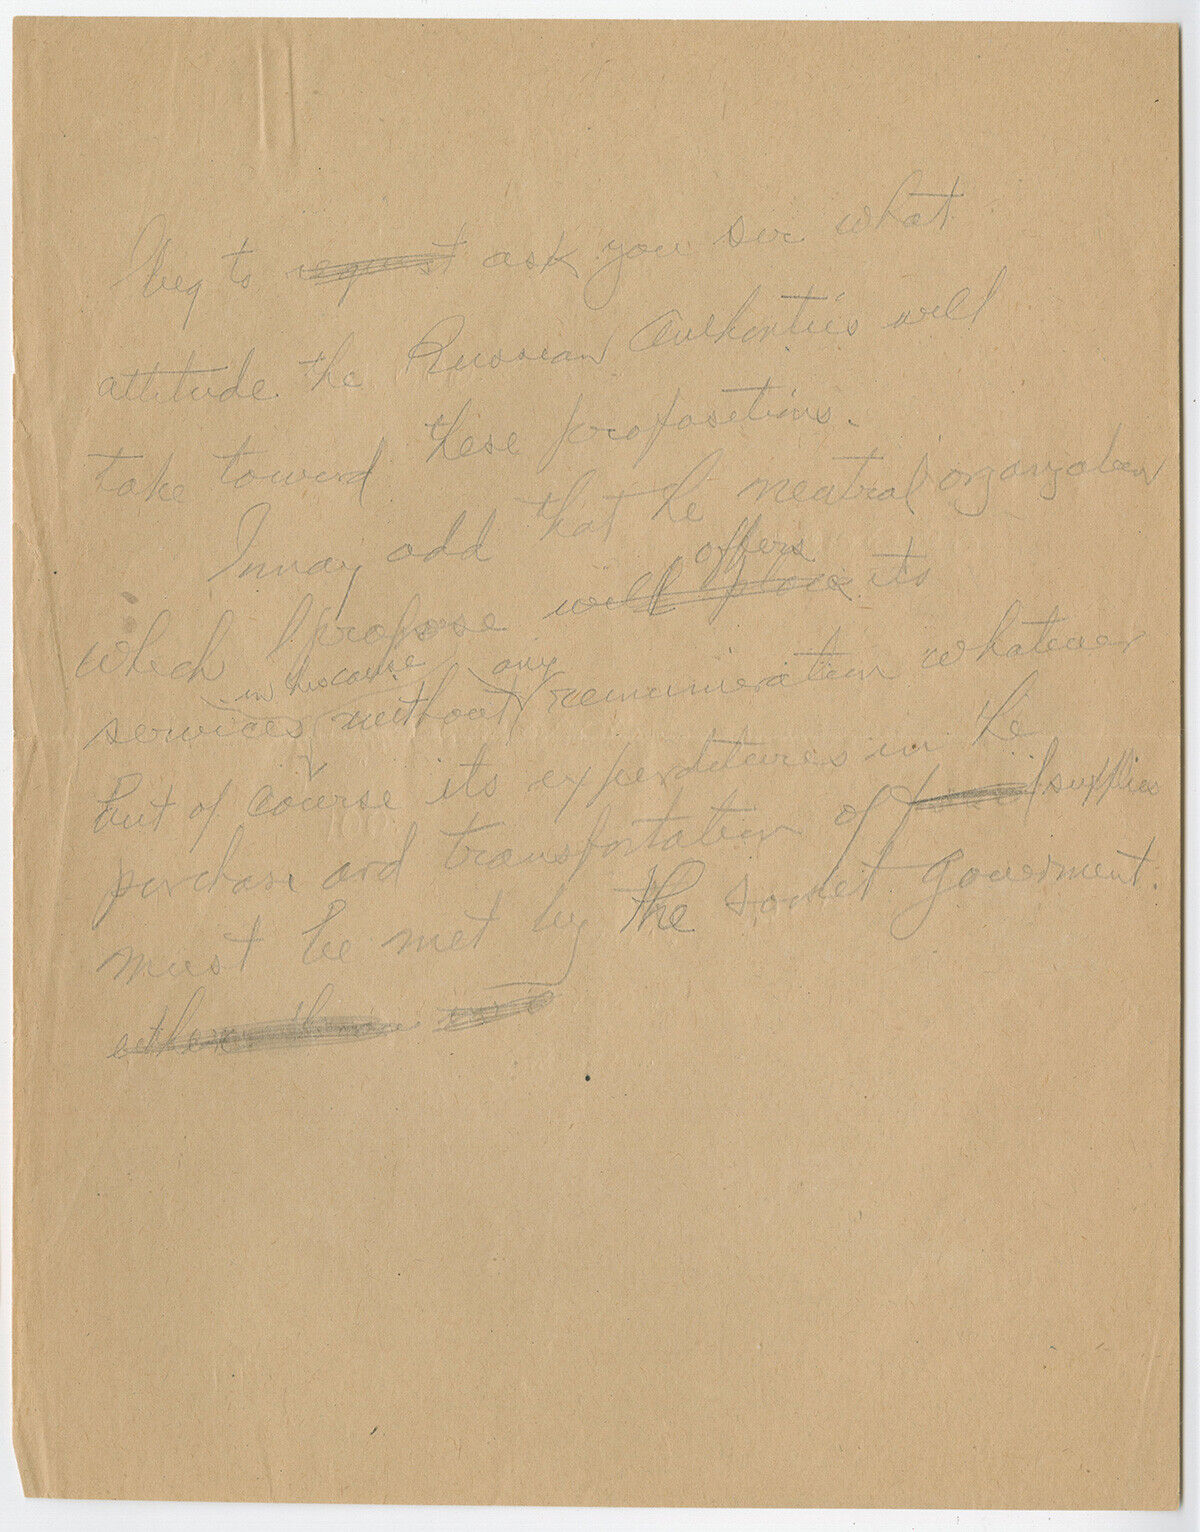 Herbert Hoover Draft Note & Fredtjof Nansen Letter to Vladimir Lenin